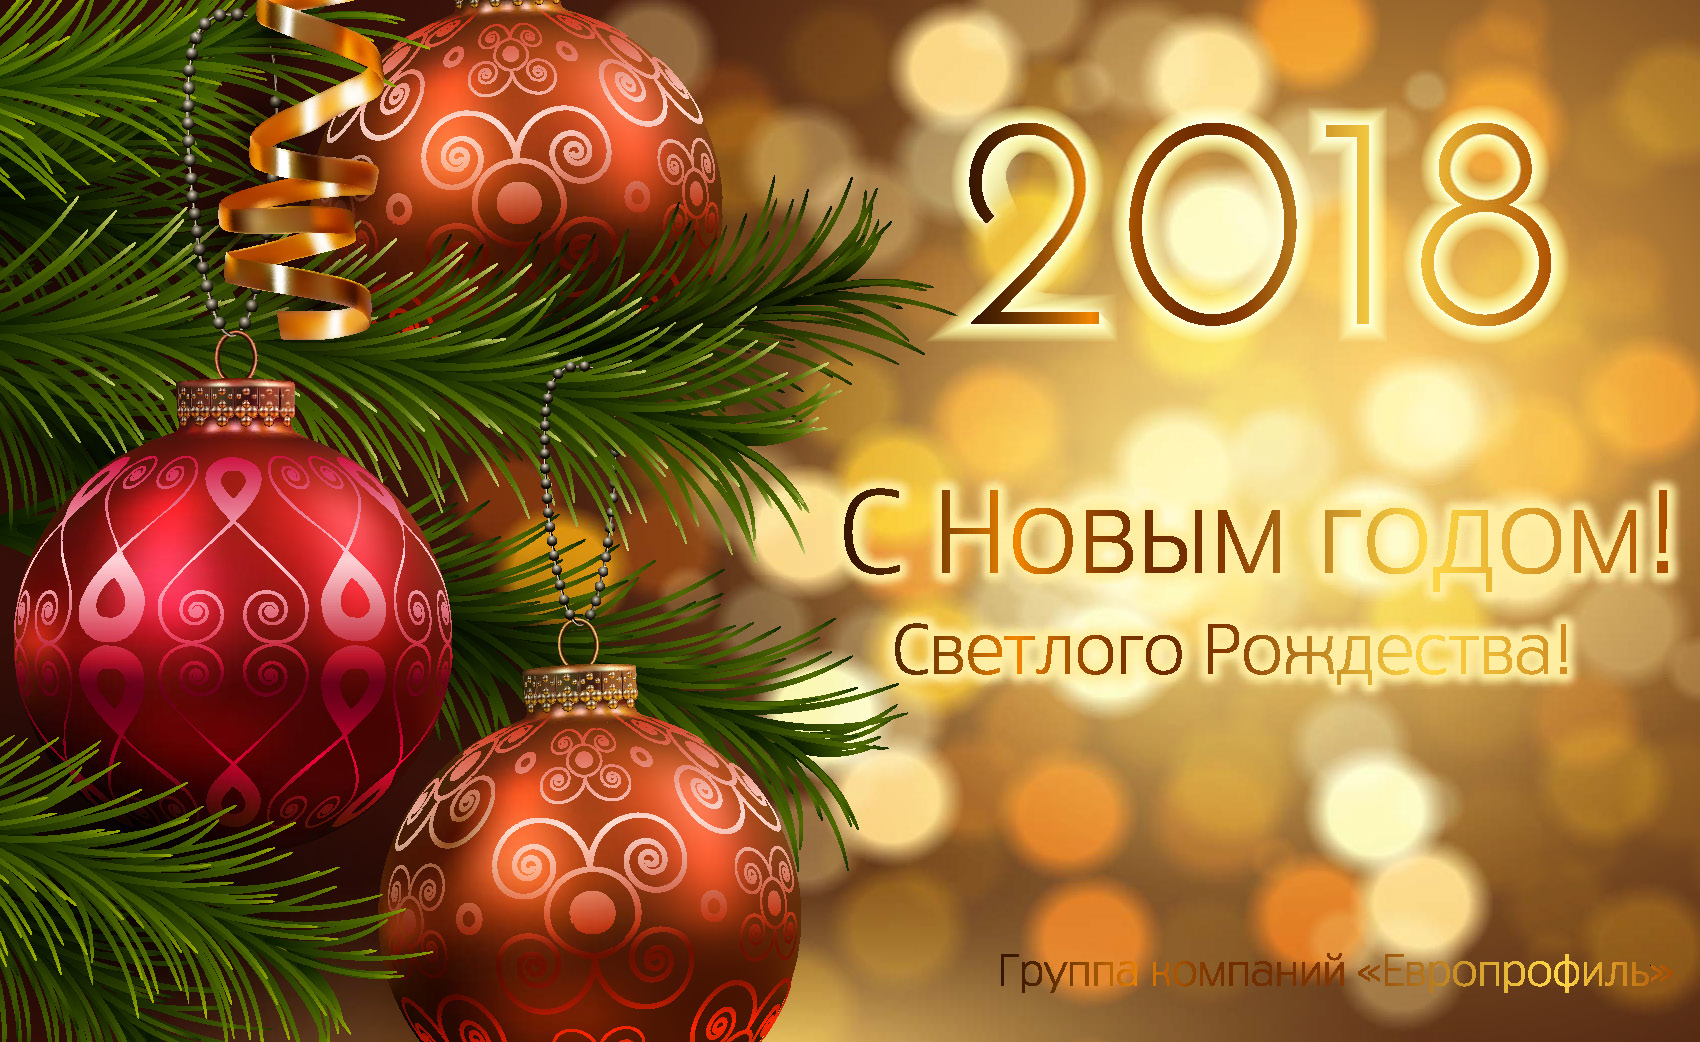 Сеть магазинов ЦКМ поздравляет вас с Новым годом и Рождеством!